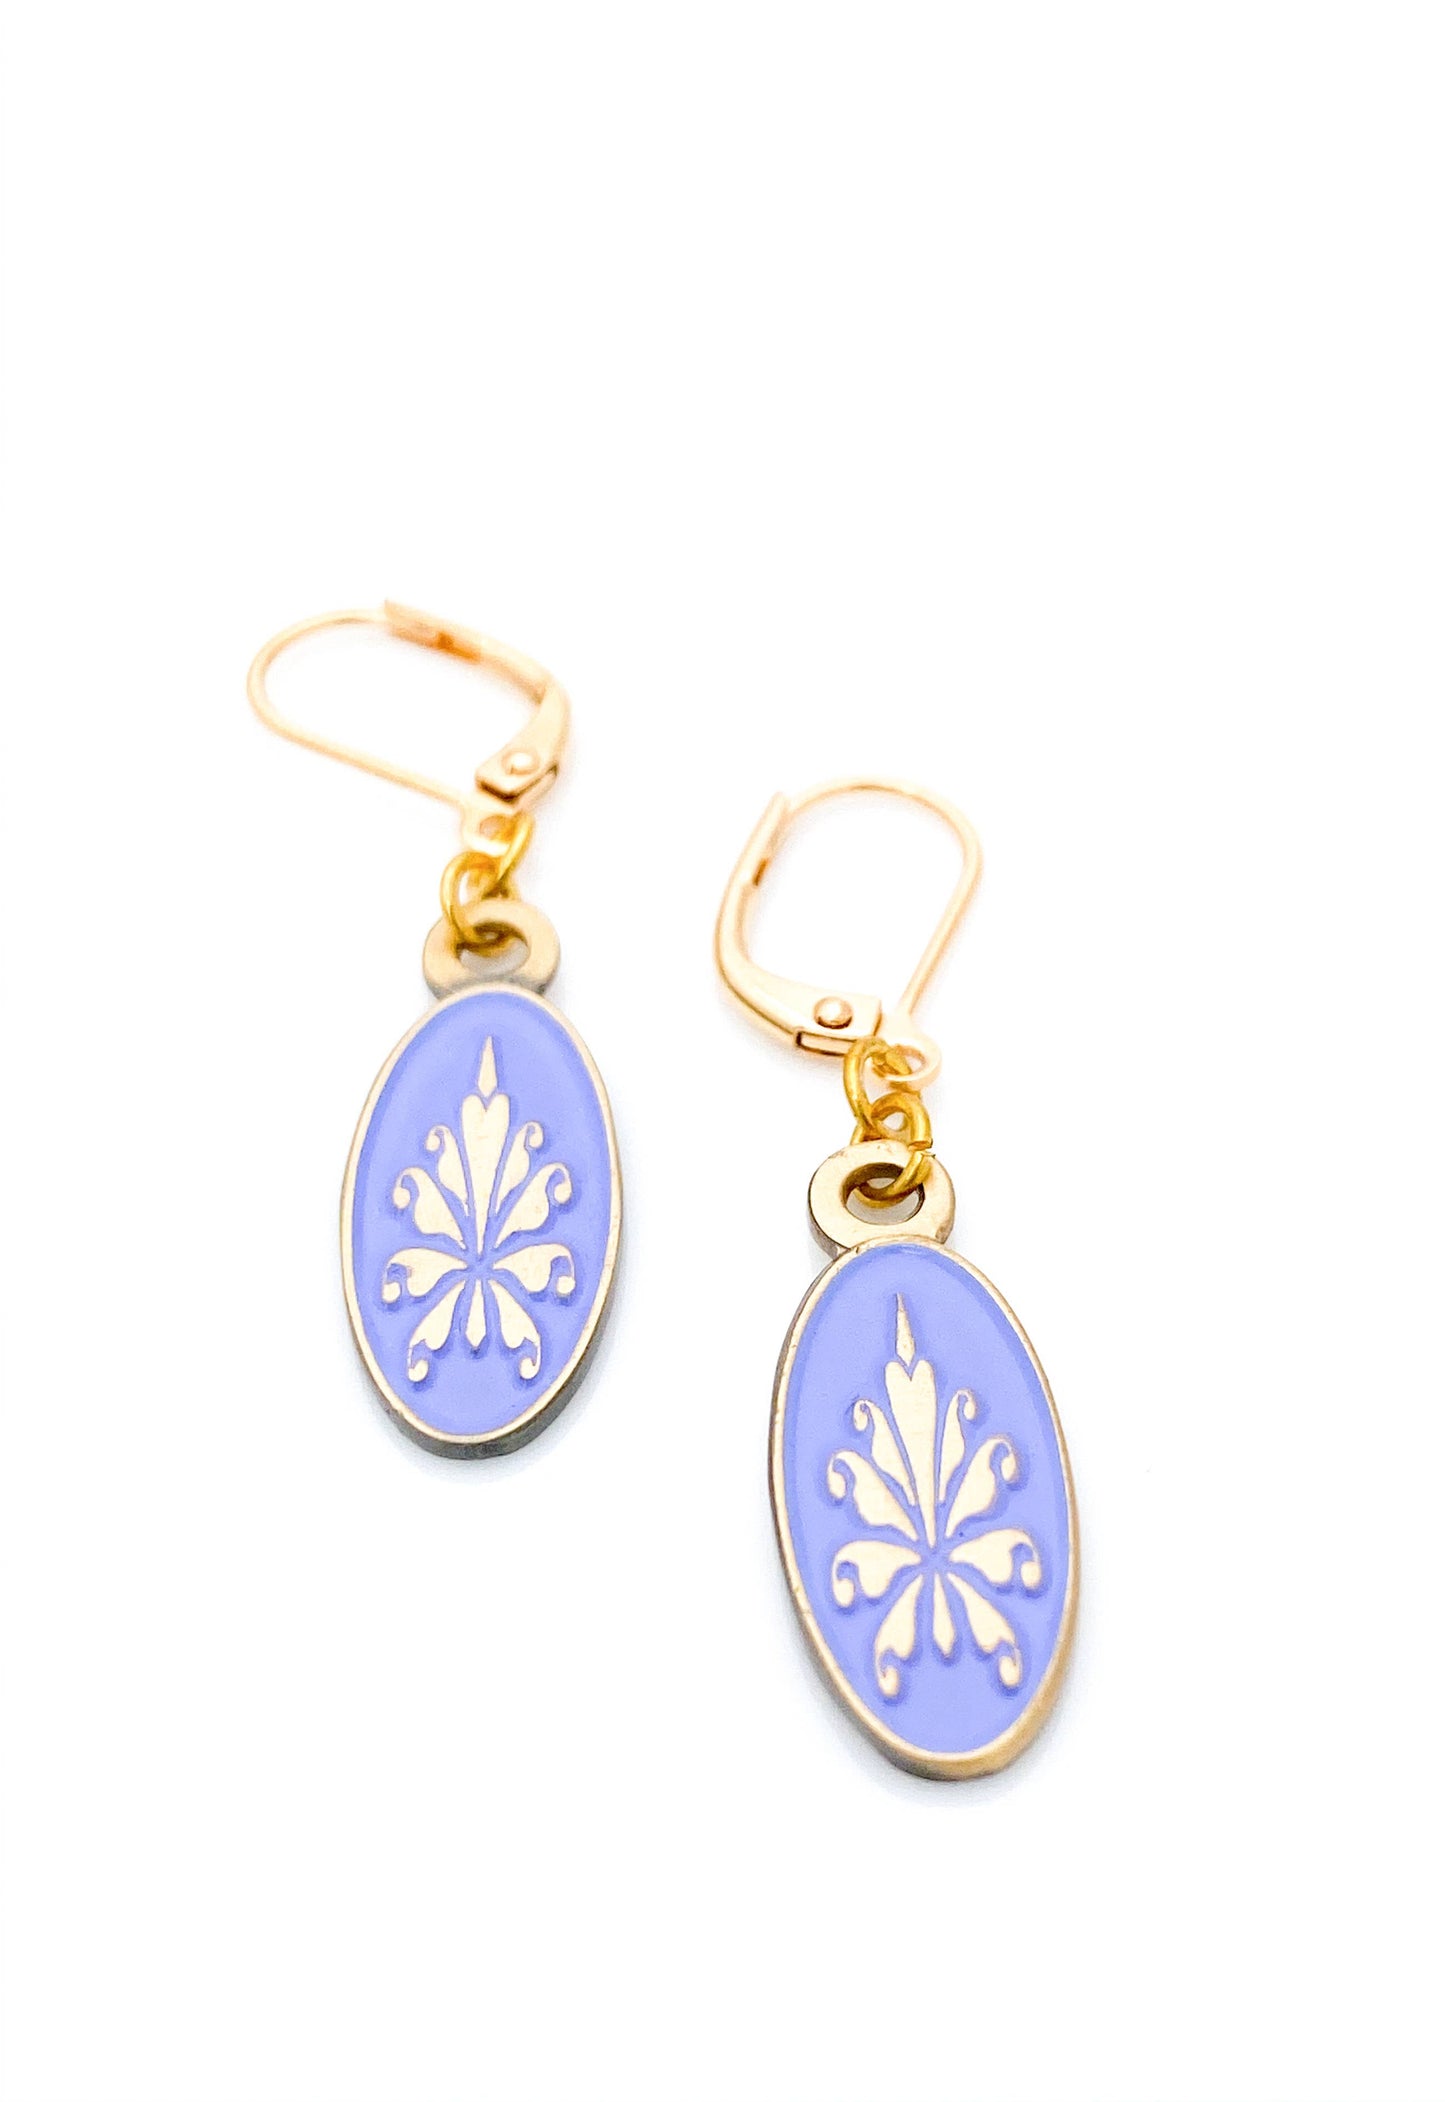 Antiqued gold oval earrings with fleur de lys pattern on lilac enamel